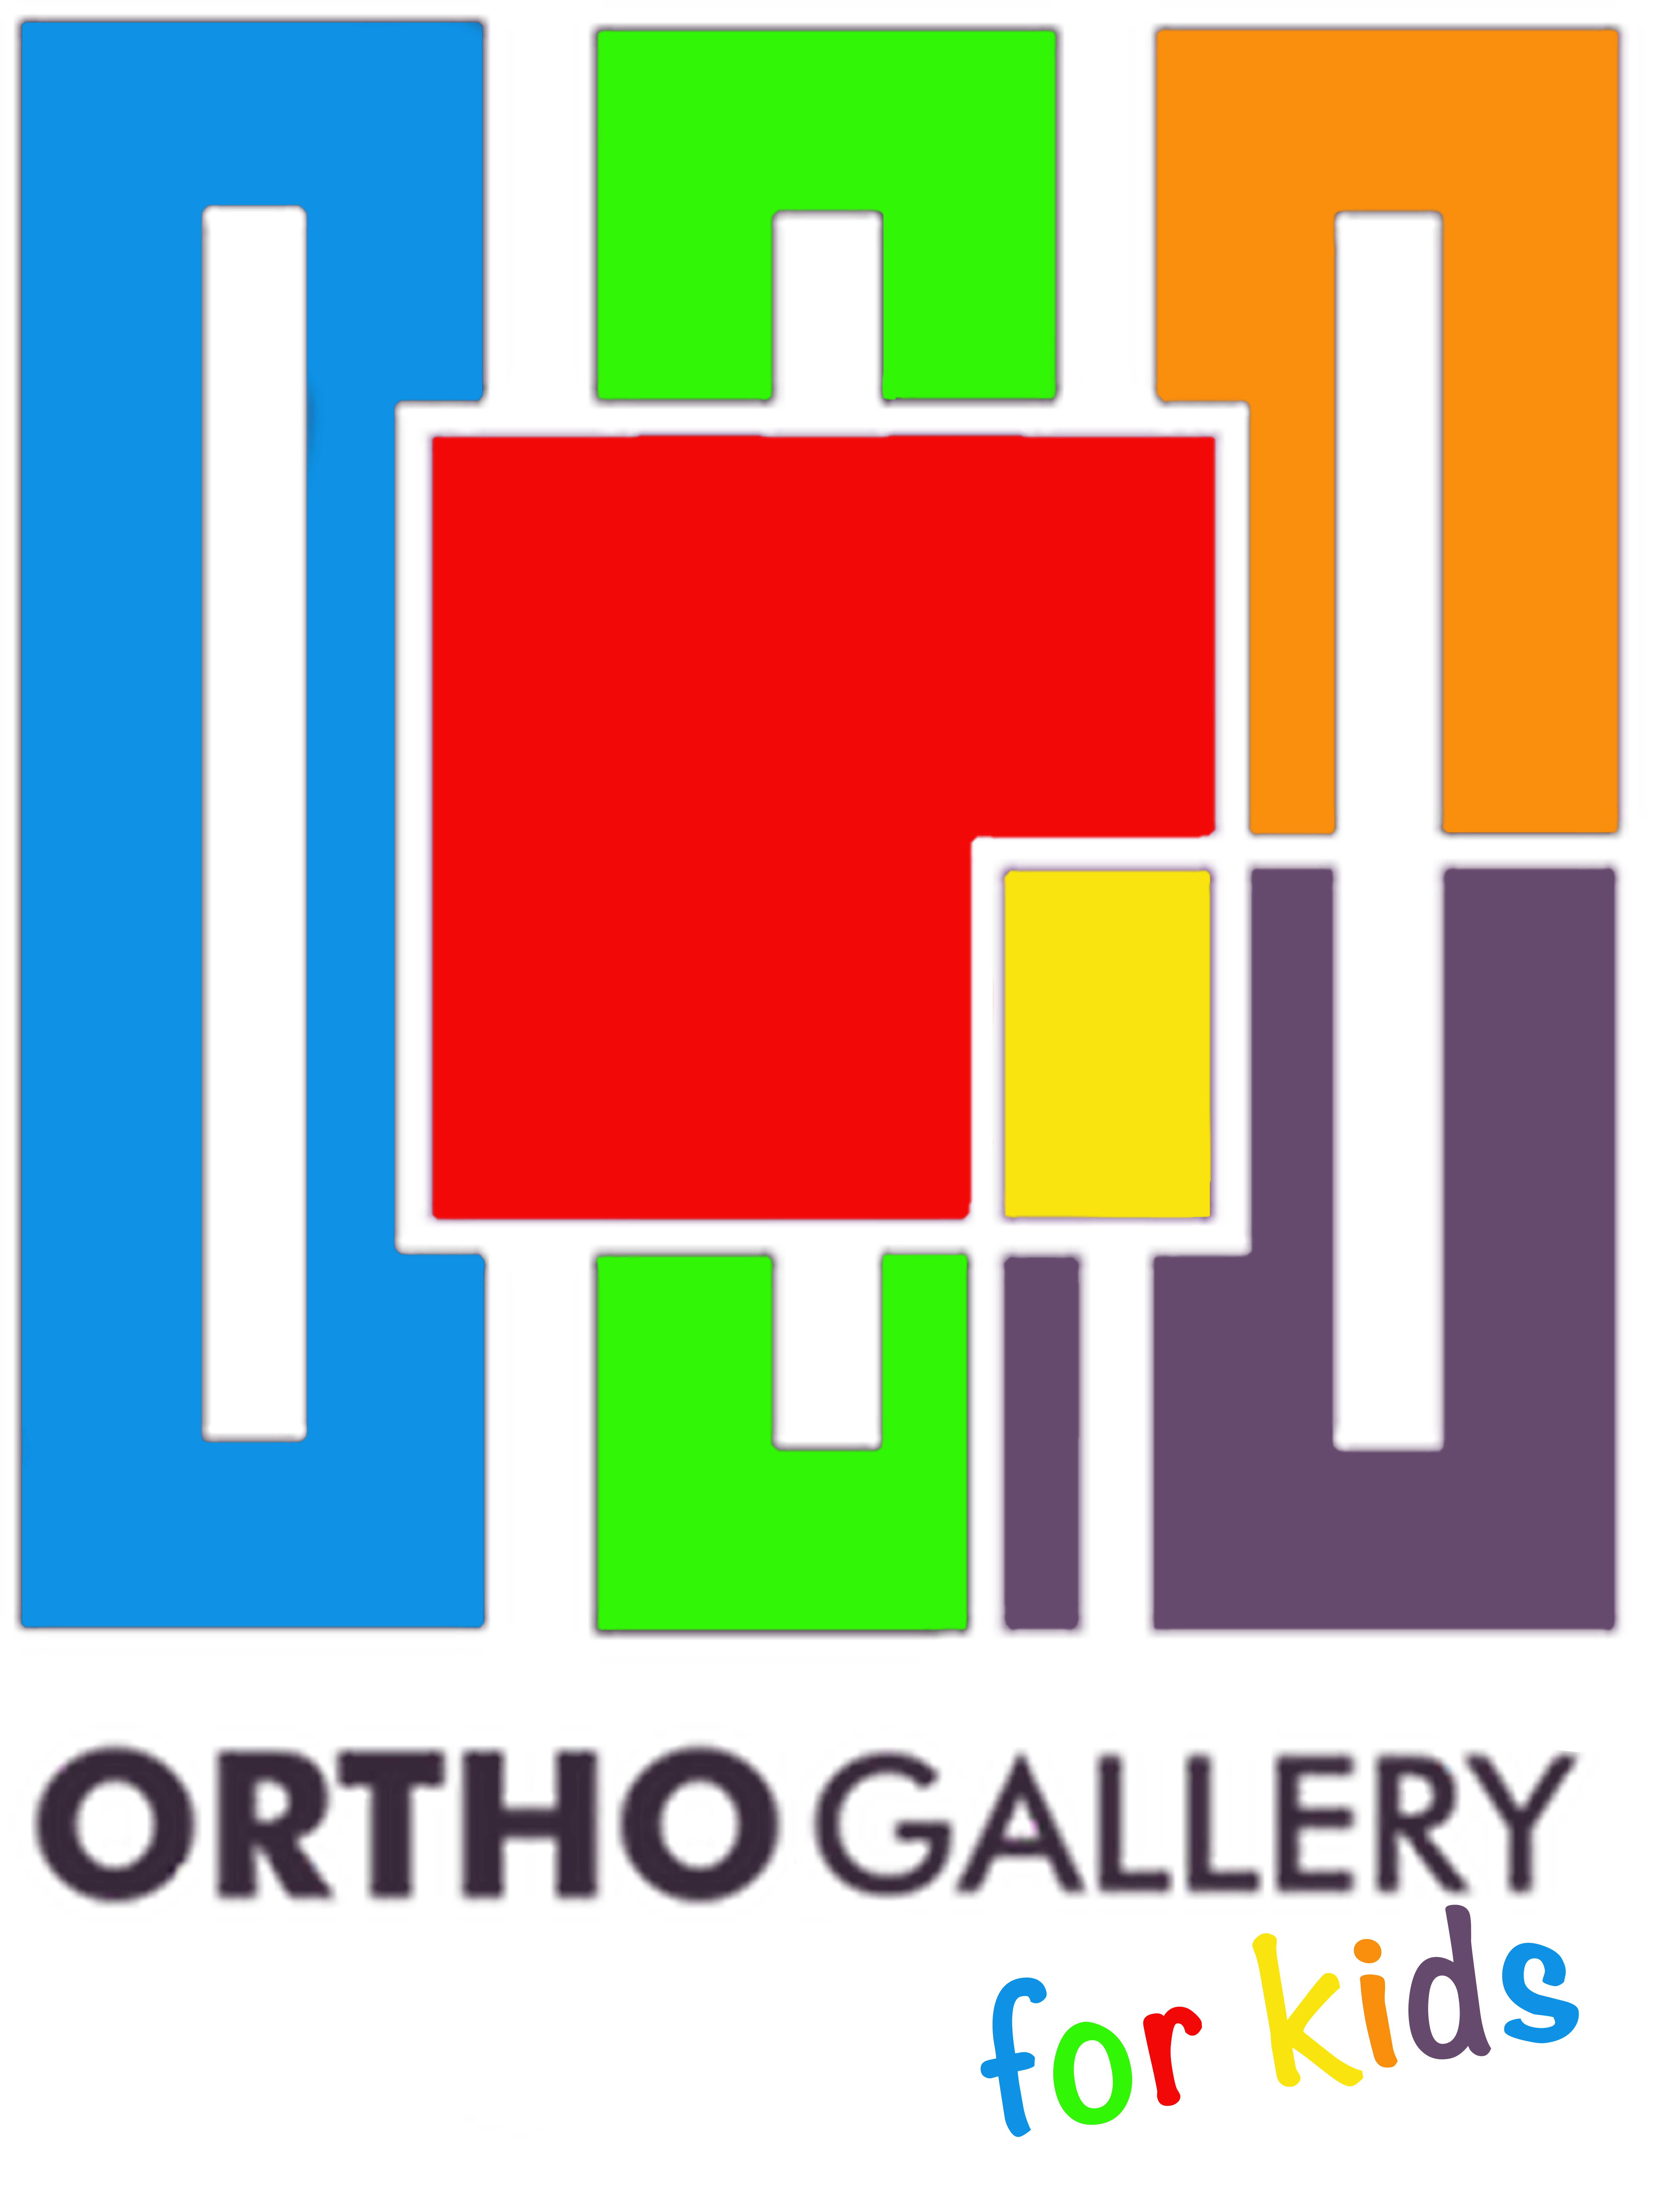 orthogallery for kids Children's Orthodontics